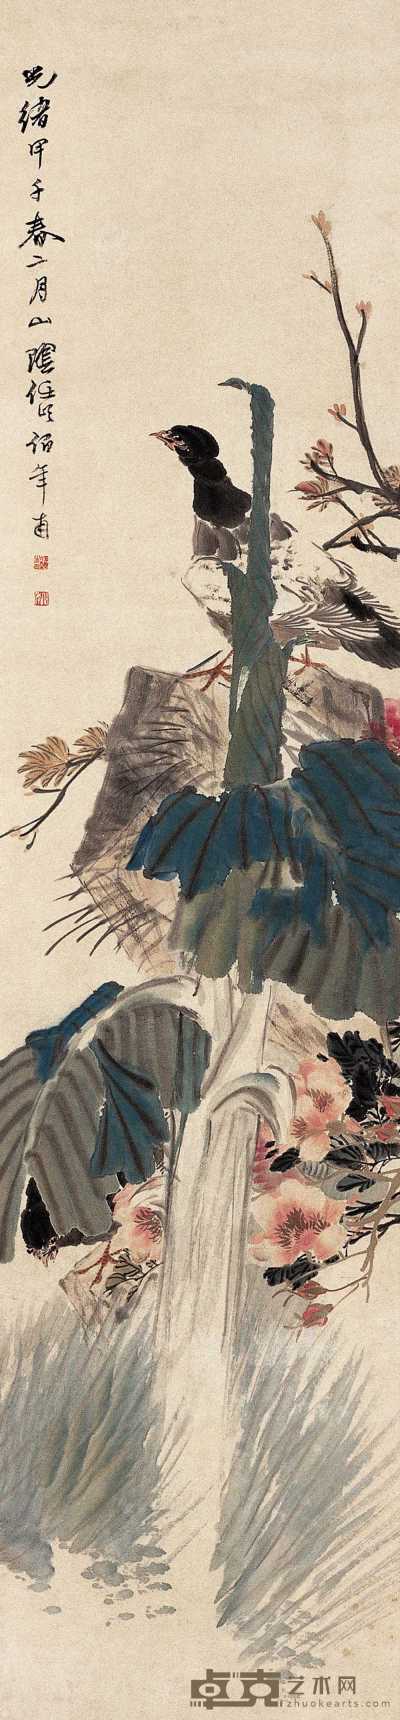 任伯年 1864年作 芭蕉锦鸡图 立轴 31×133cm